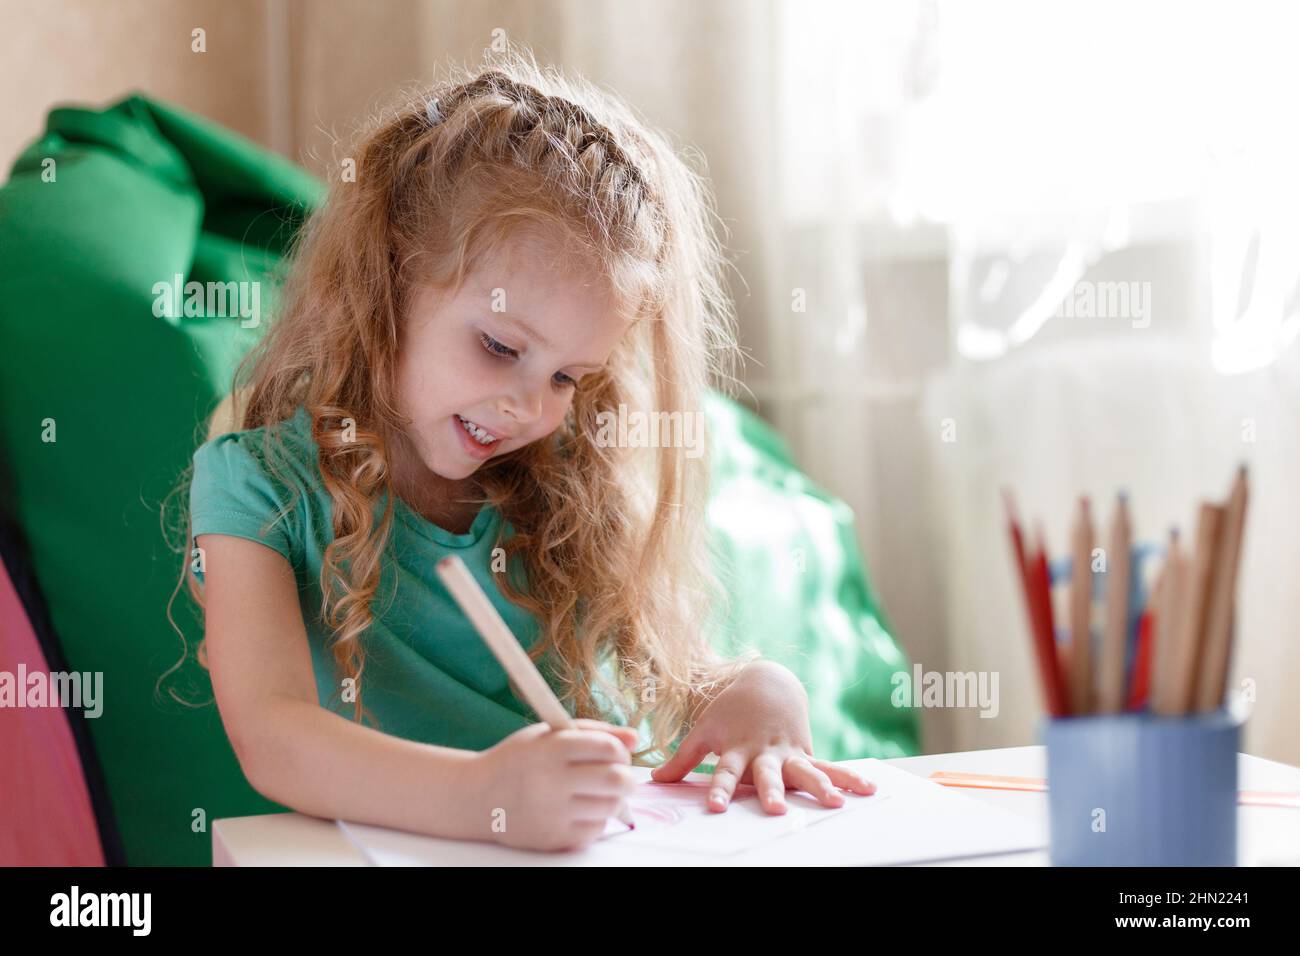 Kleines Mädchen Kind Kind im Kinderzimmer Spiel zieht mit Interesse von Bleistiften im Kindergarten. 5 Jahre glücklich lächelnd Kindermädchen zieht im Zimmer allein Stockfoto